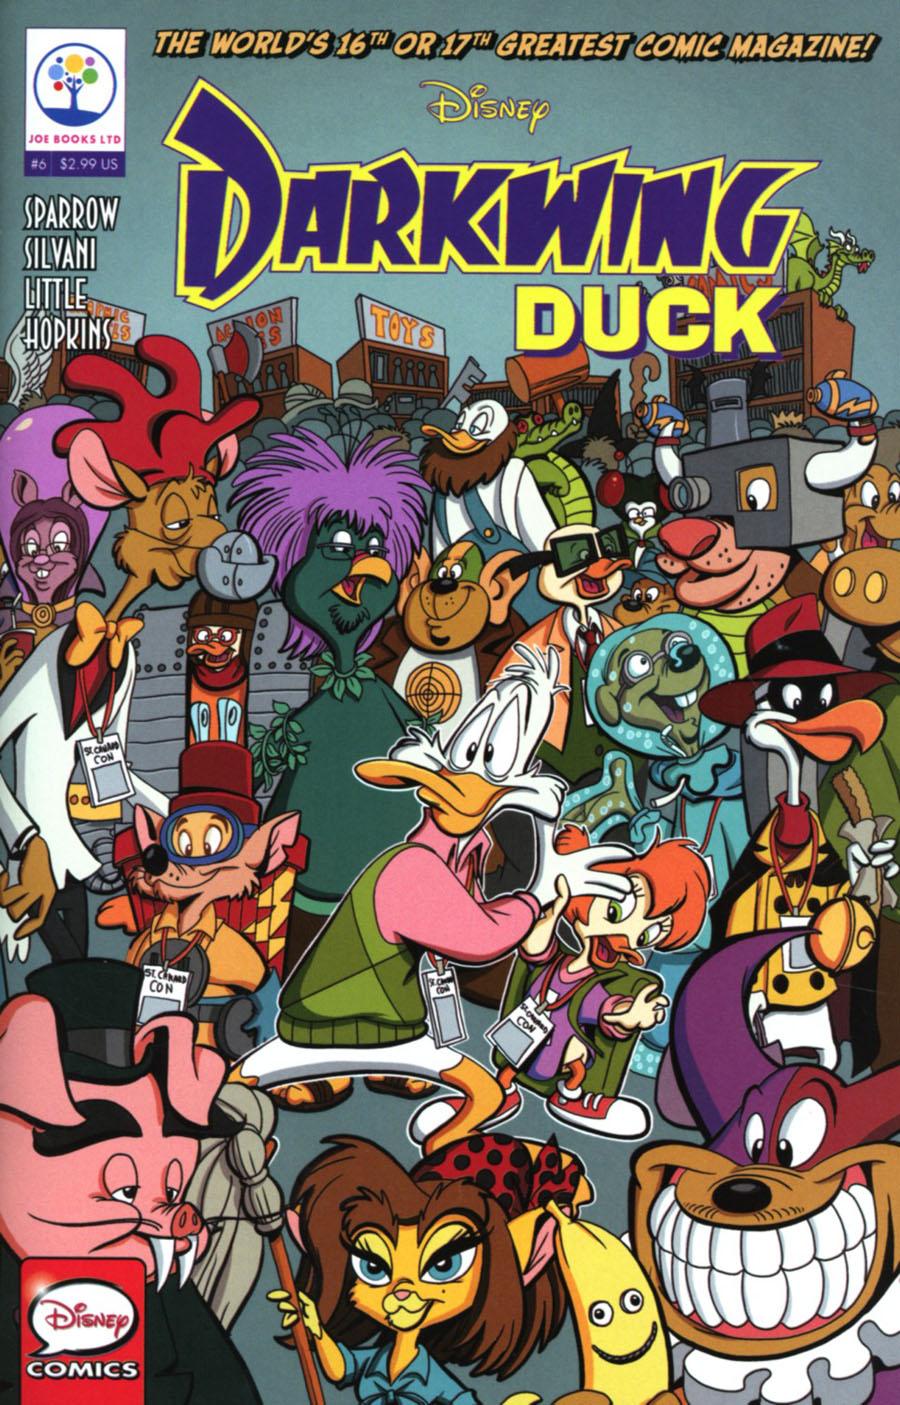 Disneys Darkwing Duck Vol. 1 #6